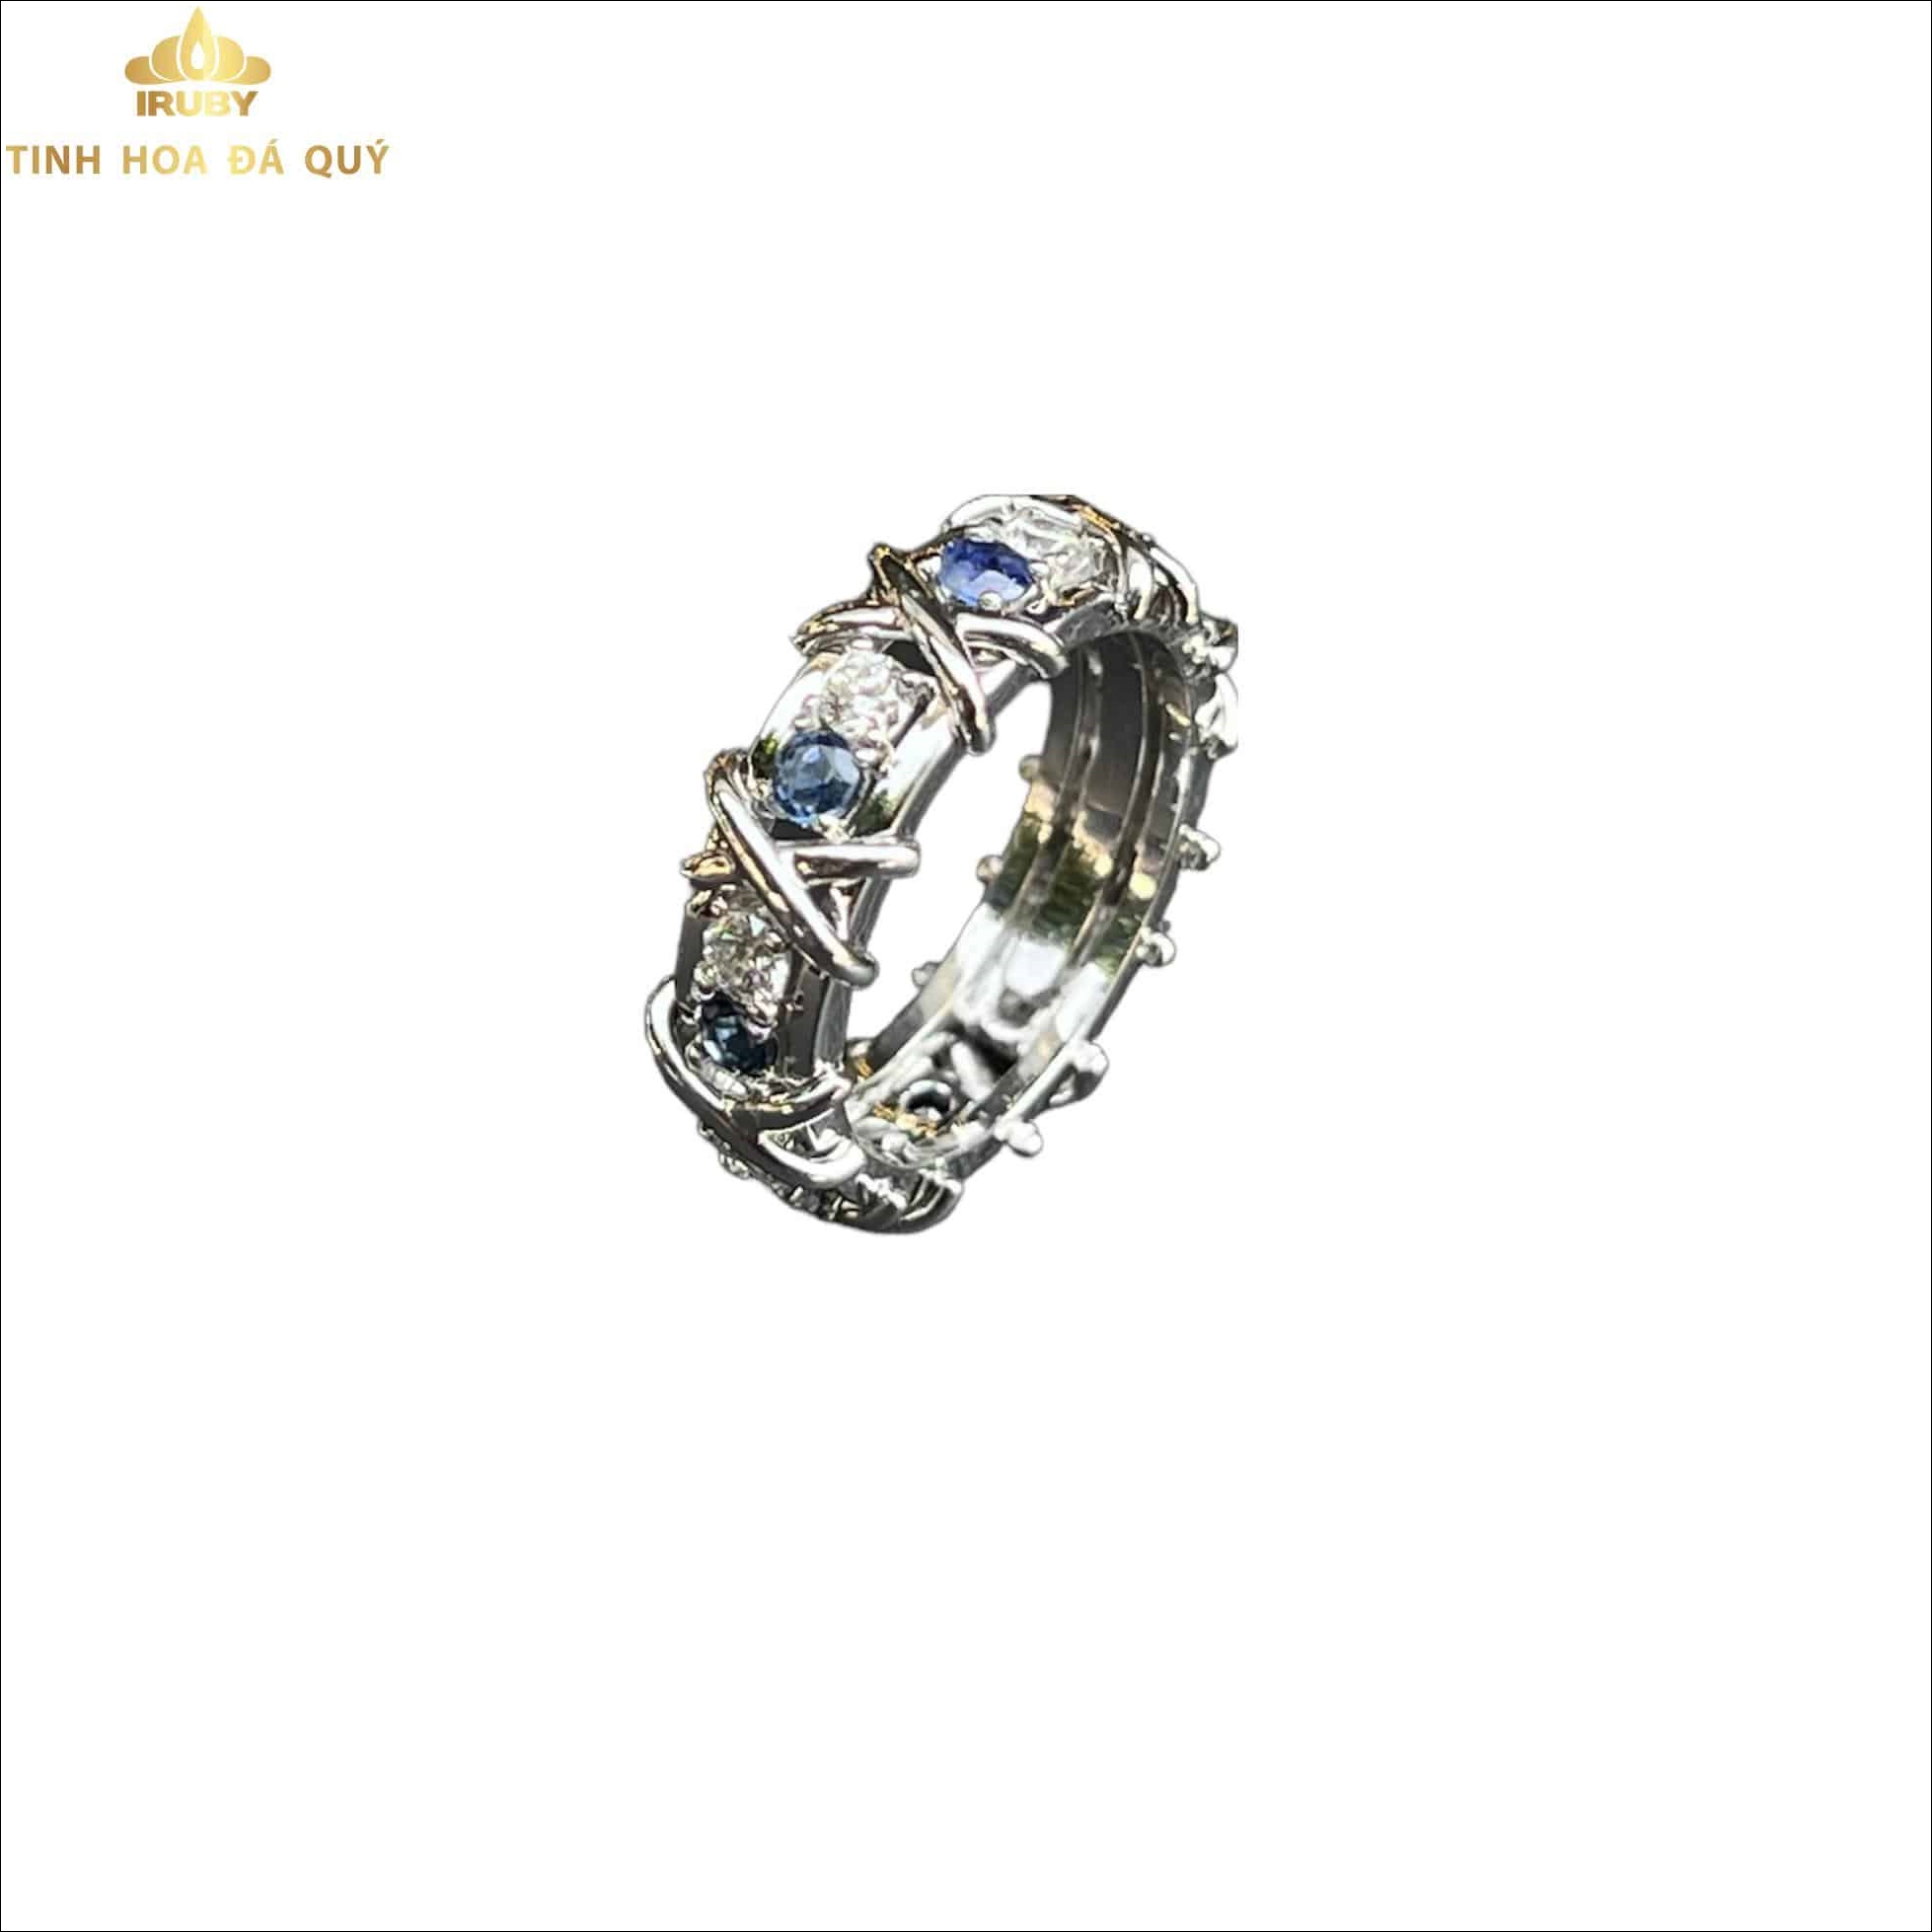 Nhẫn nữ Sapphire kết Kim Cương mẫu Tiffany 2,5ct - IRSP 221025